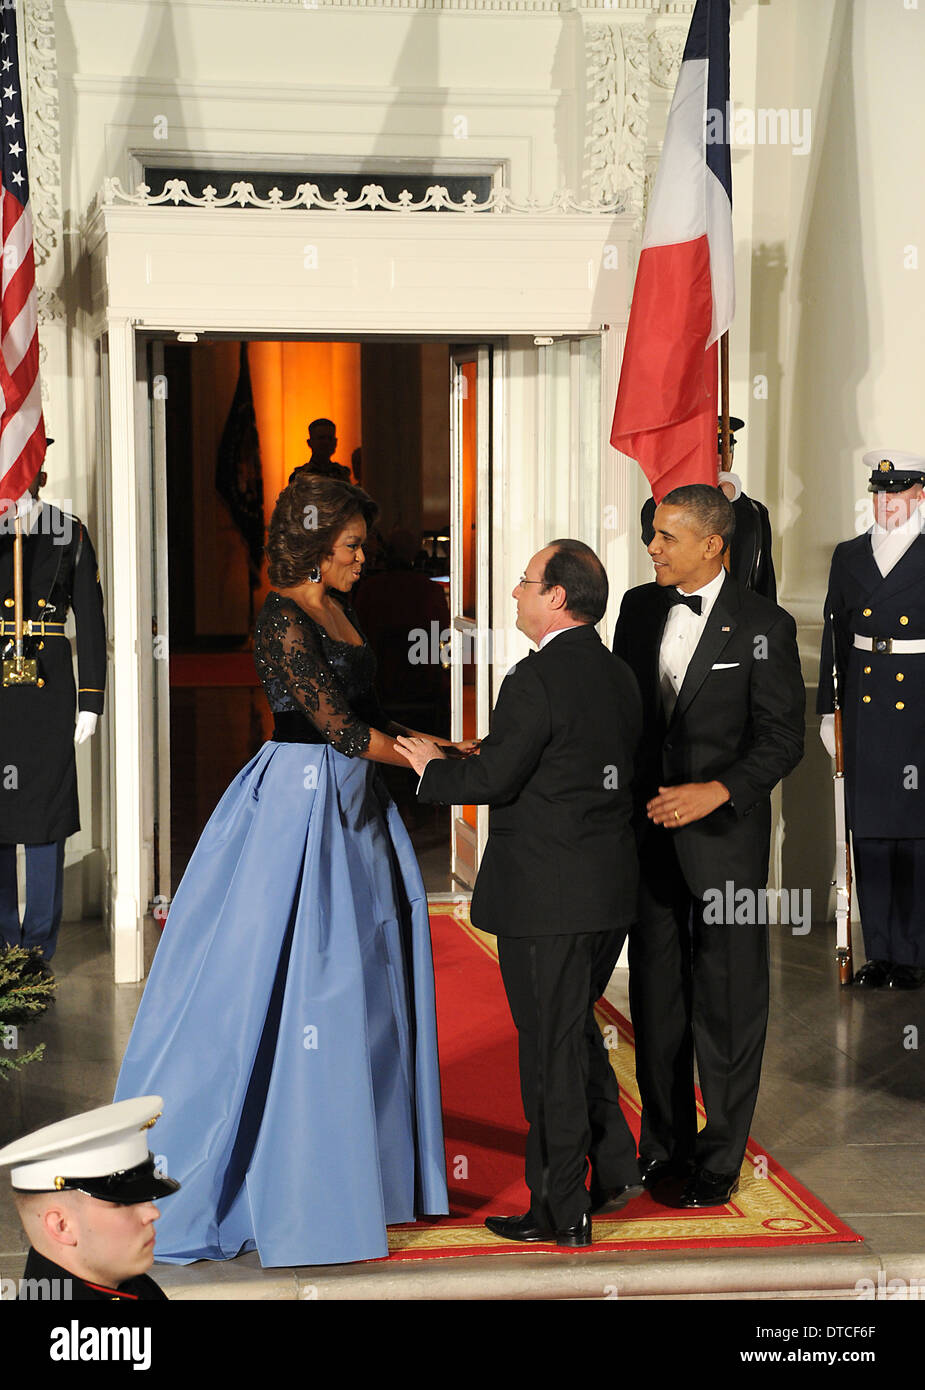 Noi la first lady Michelle Obama accoglie favorevolmente il Presidente francese Francois Hollande come presidente Barack Obama guarda il portico settentrionale della Casa Bianca Febbraio 11, 2014 a Washington D.C. Foto Stock